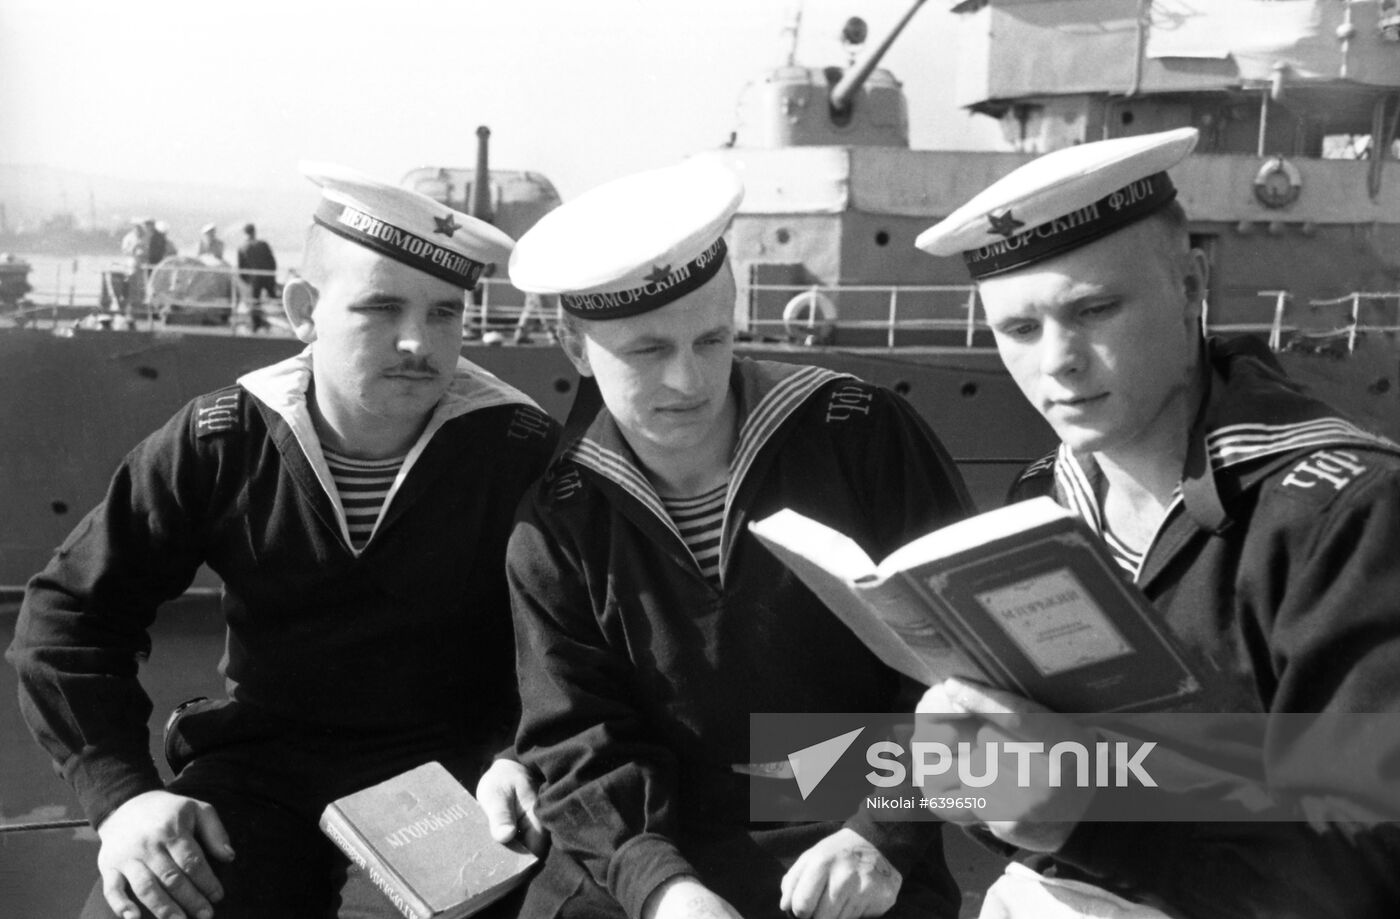 Sailors of USSR's Black Sea Fleet